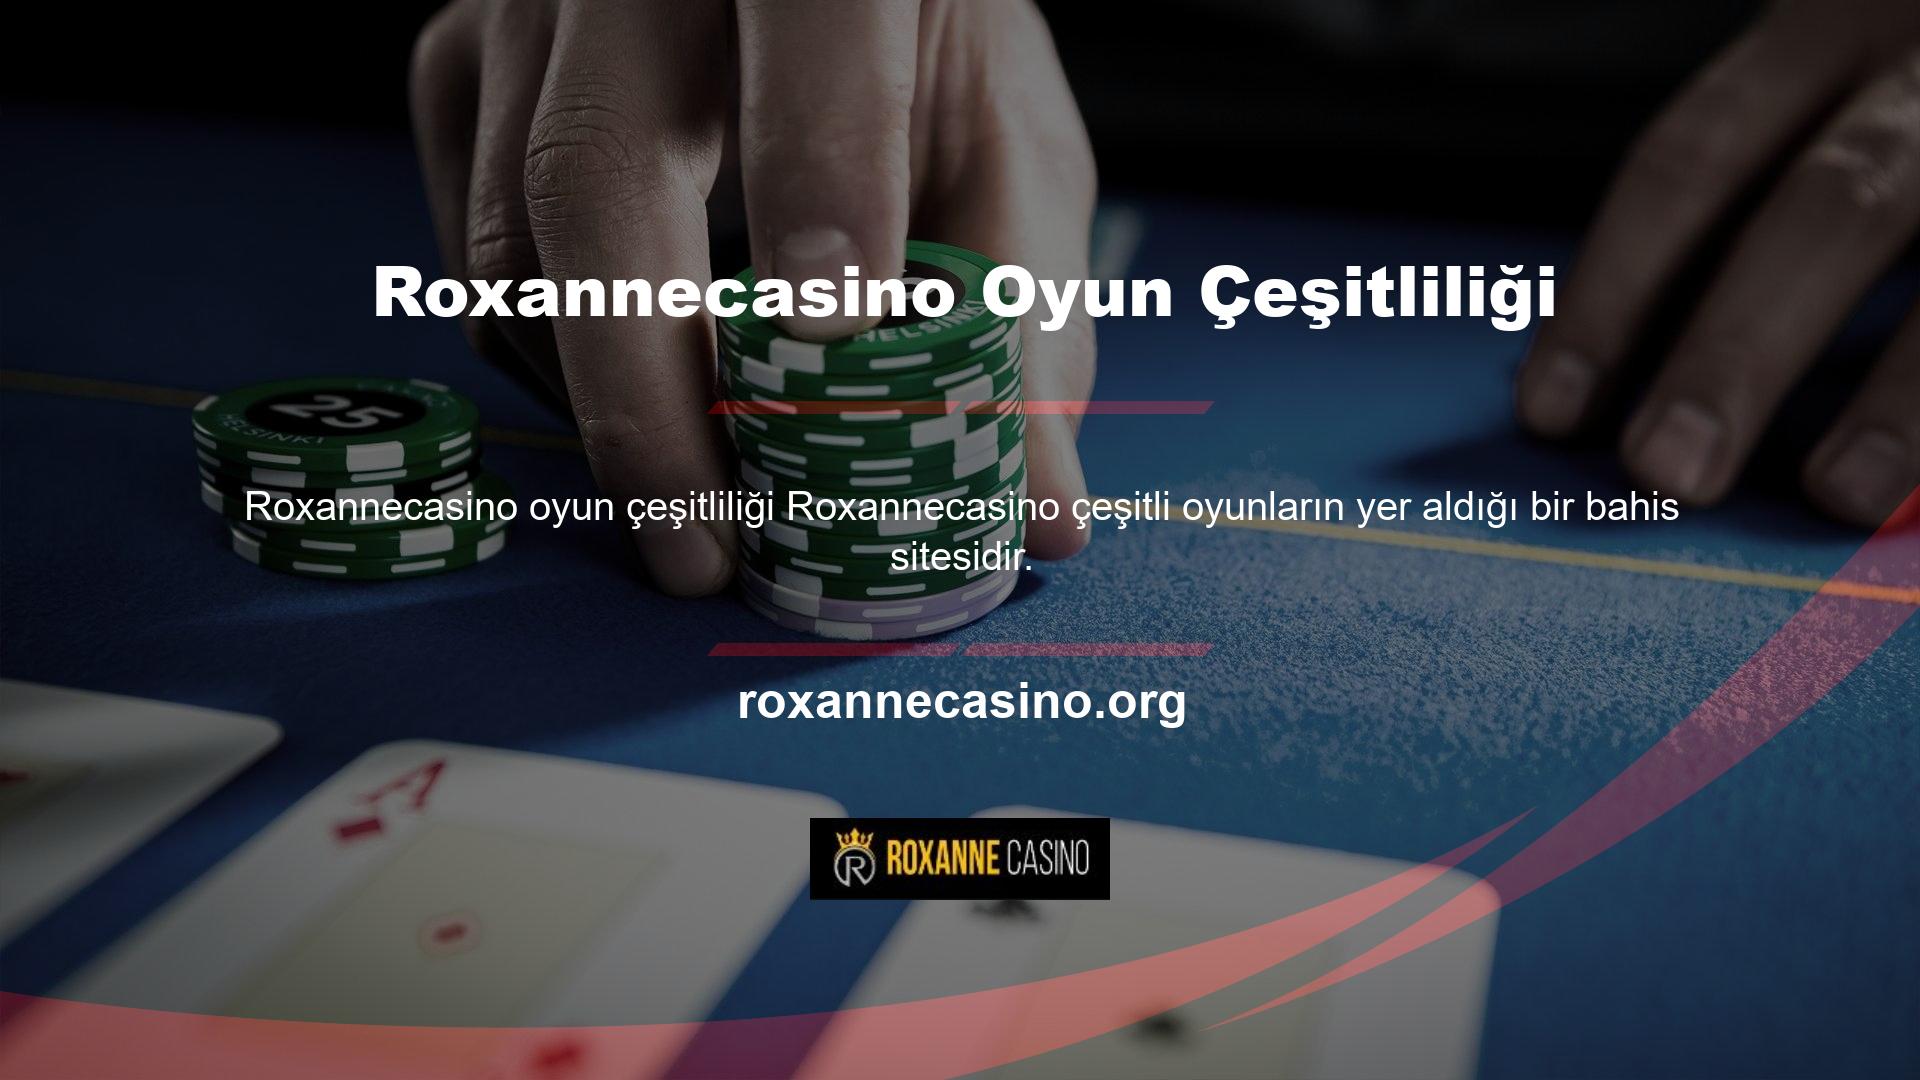 Roxannecasino web sitesi diğer sitelere göre daha fazla çeşitlilik sunması nedeniyle bahis tutkunları arasında oldukça popülerdir